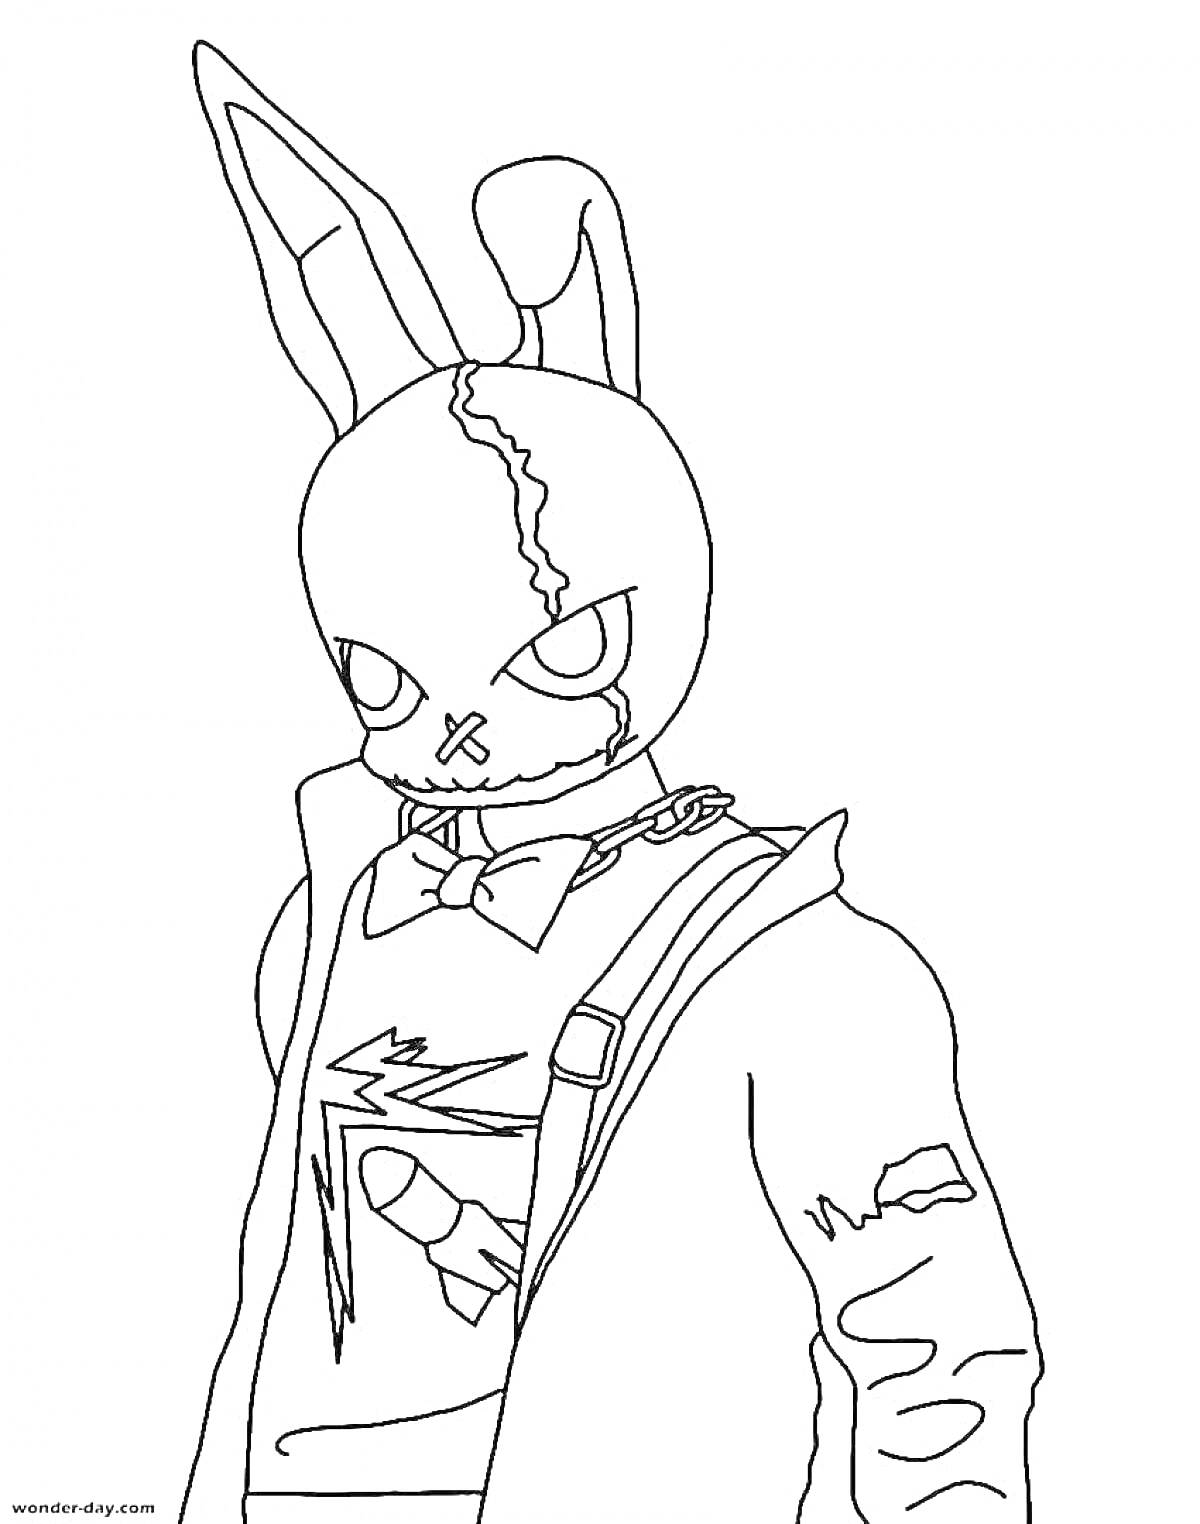 Раскраска Воин в маске кролика с ошейником и трещинами, надетой курткой, рубашкой с рисунком ракеты.